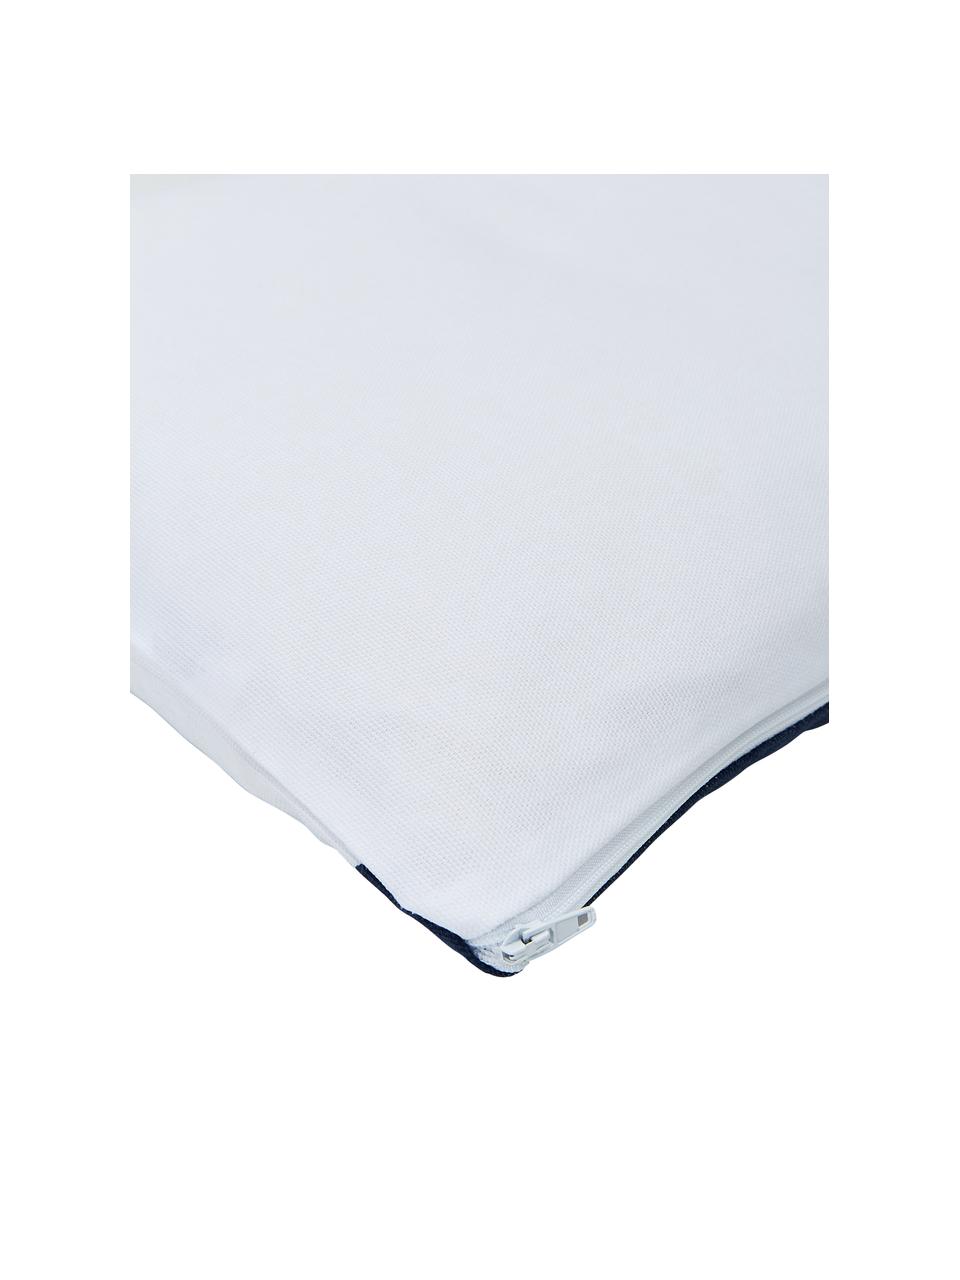 Federa arredo a strisce color blu scuro/bianco Ren, 100% cotone, Bianco, blu scuro, Larg. 30 x Lung. 50 cm